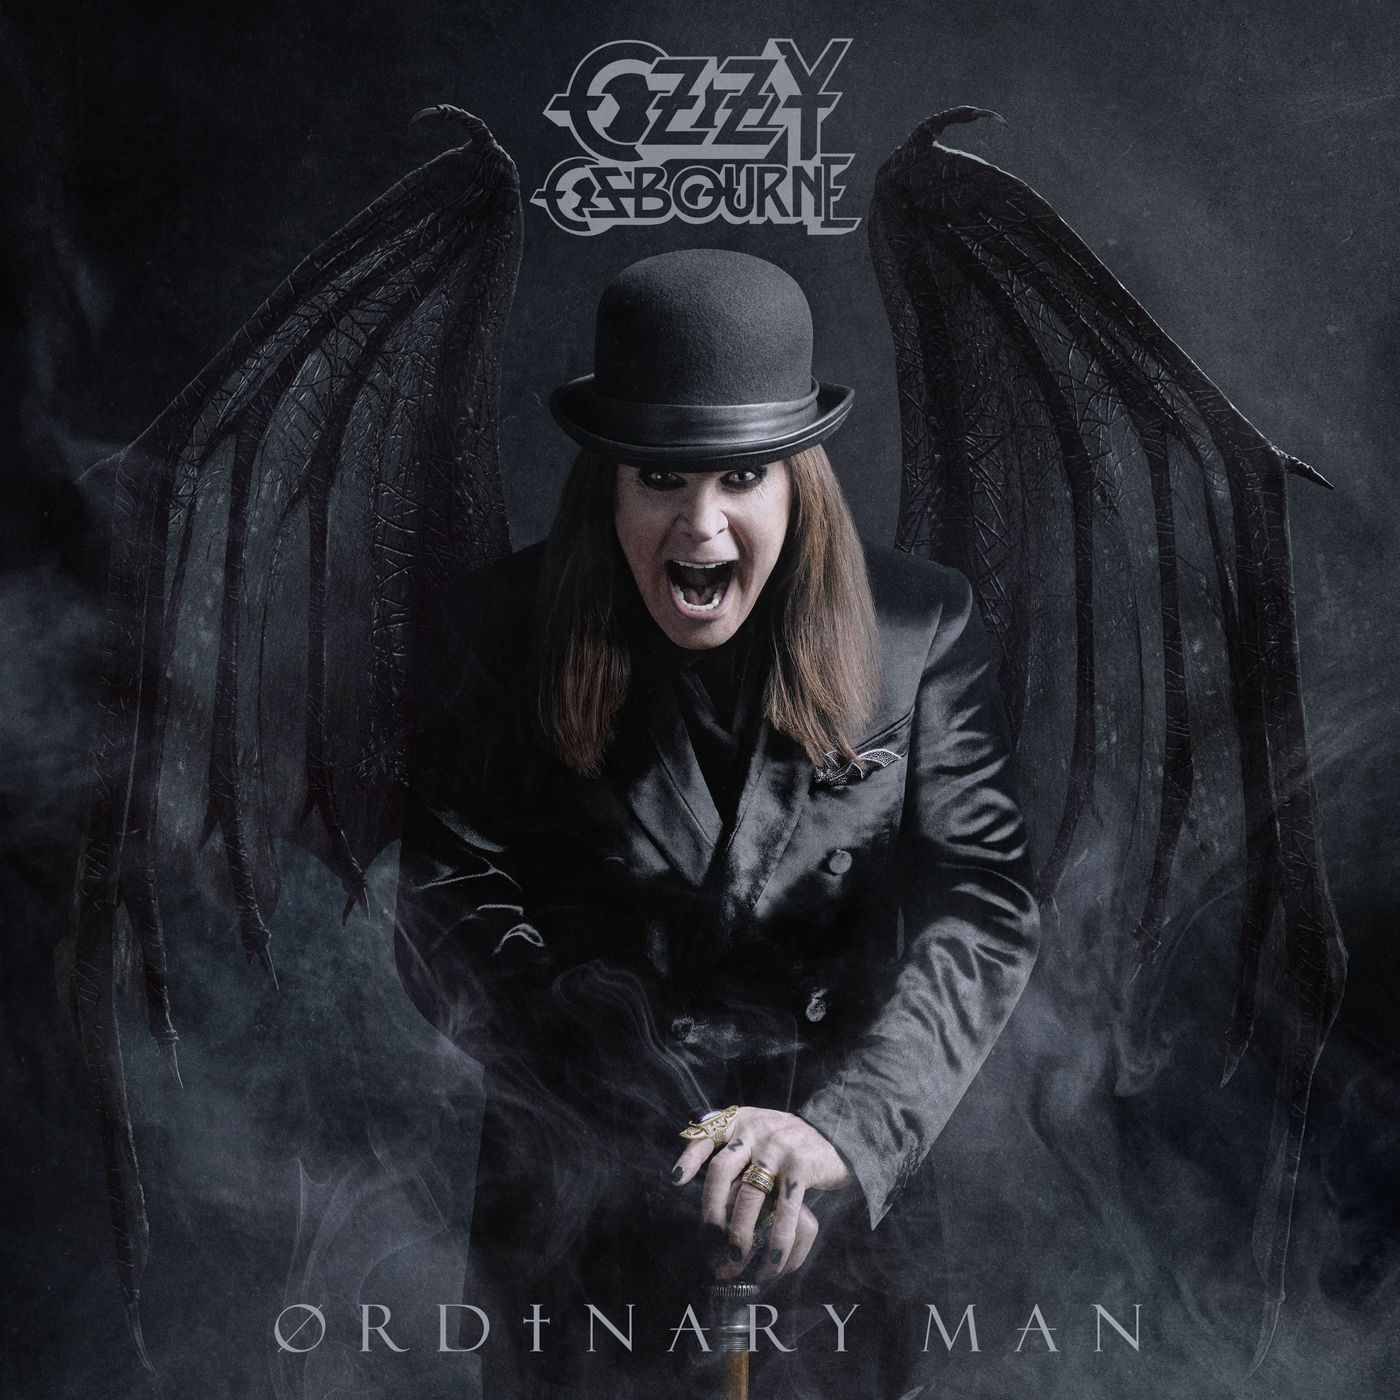 Ozzy Osbourne – Ordinary Man (2020) [FLAC 24bit/48kHz]